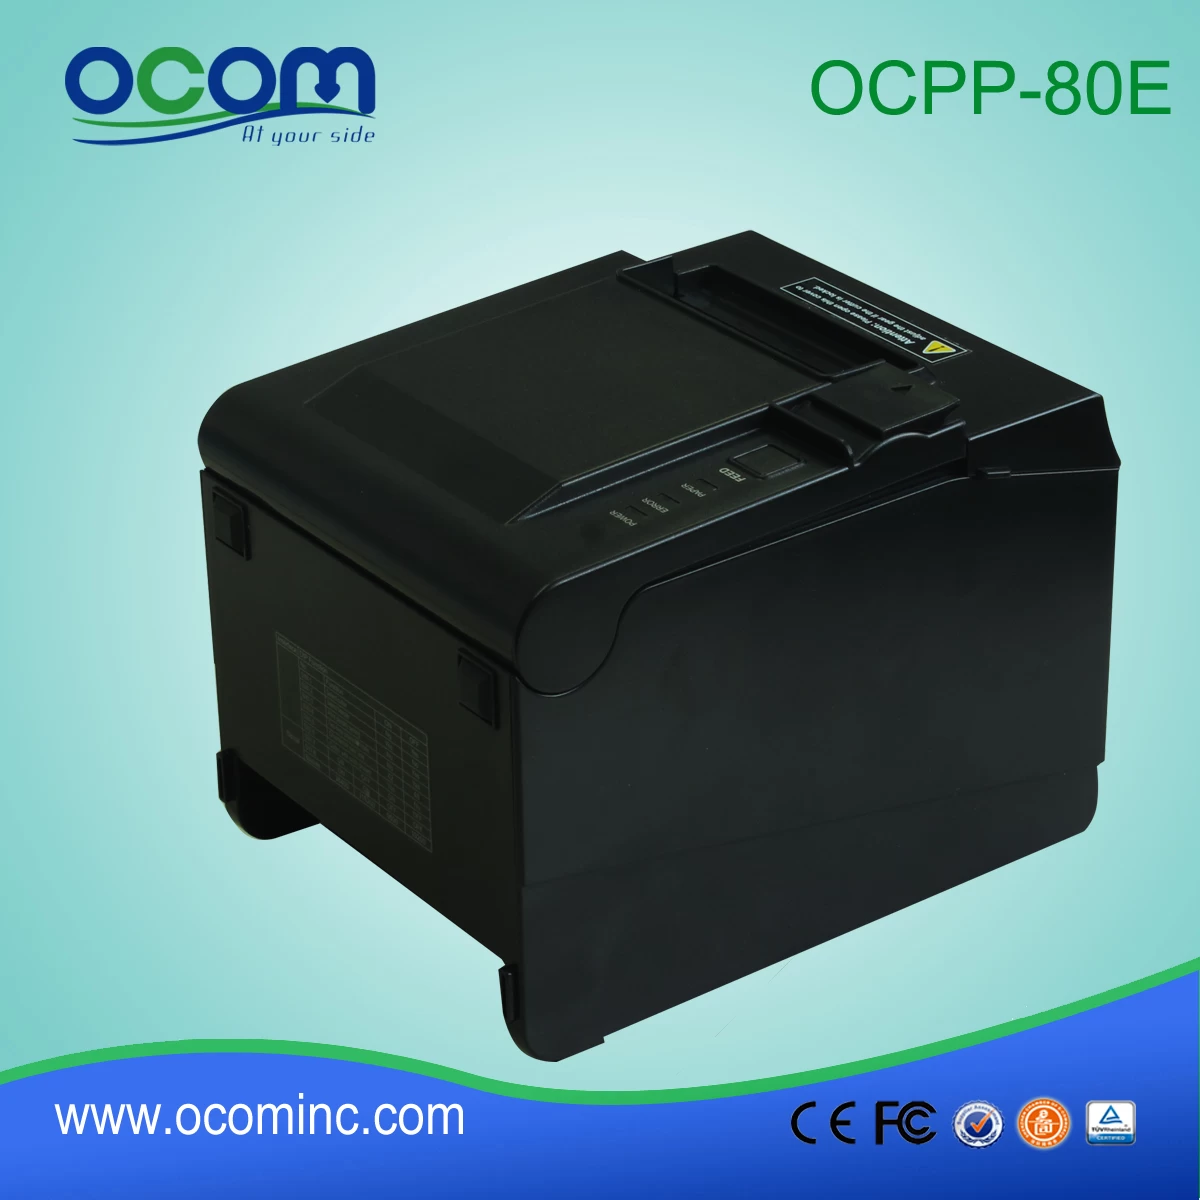 OCPP-80E----China made 80mm POS receipt printer